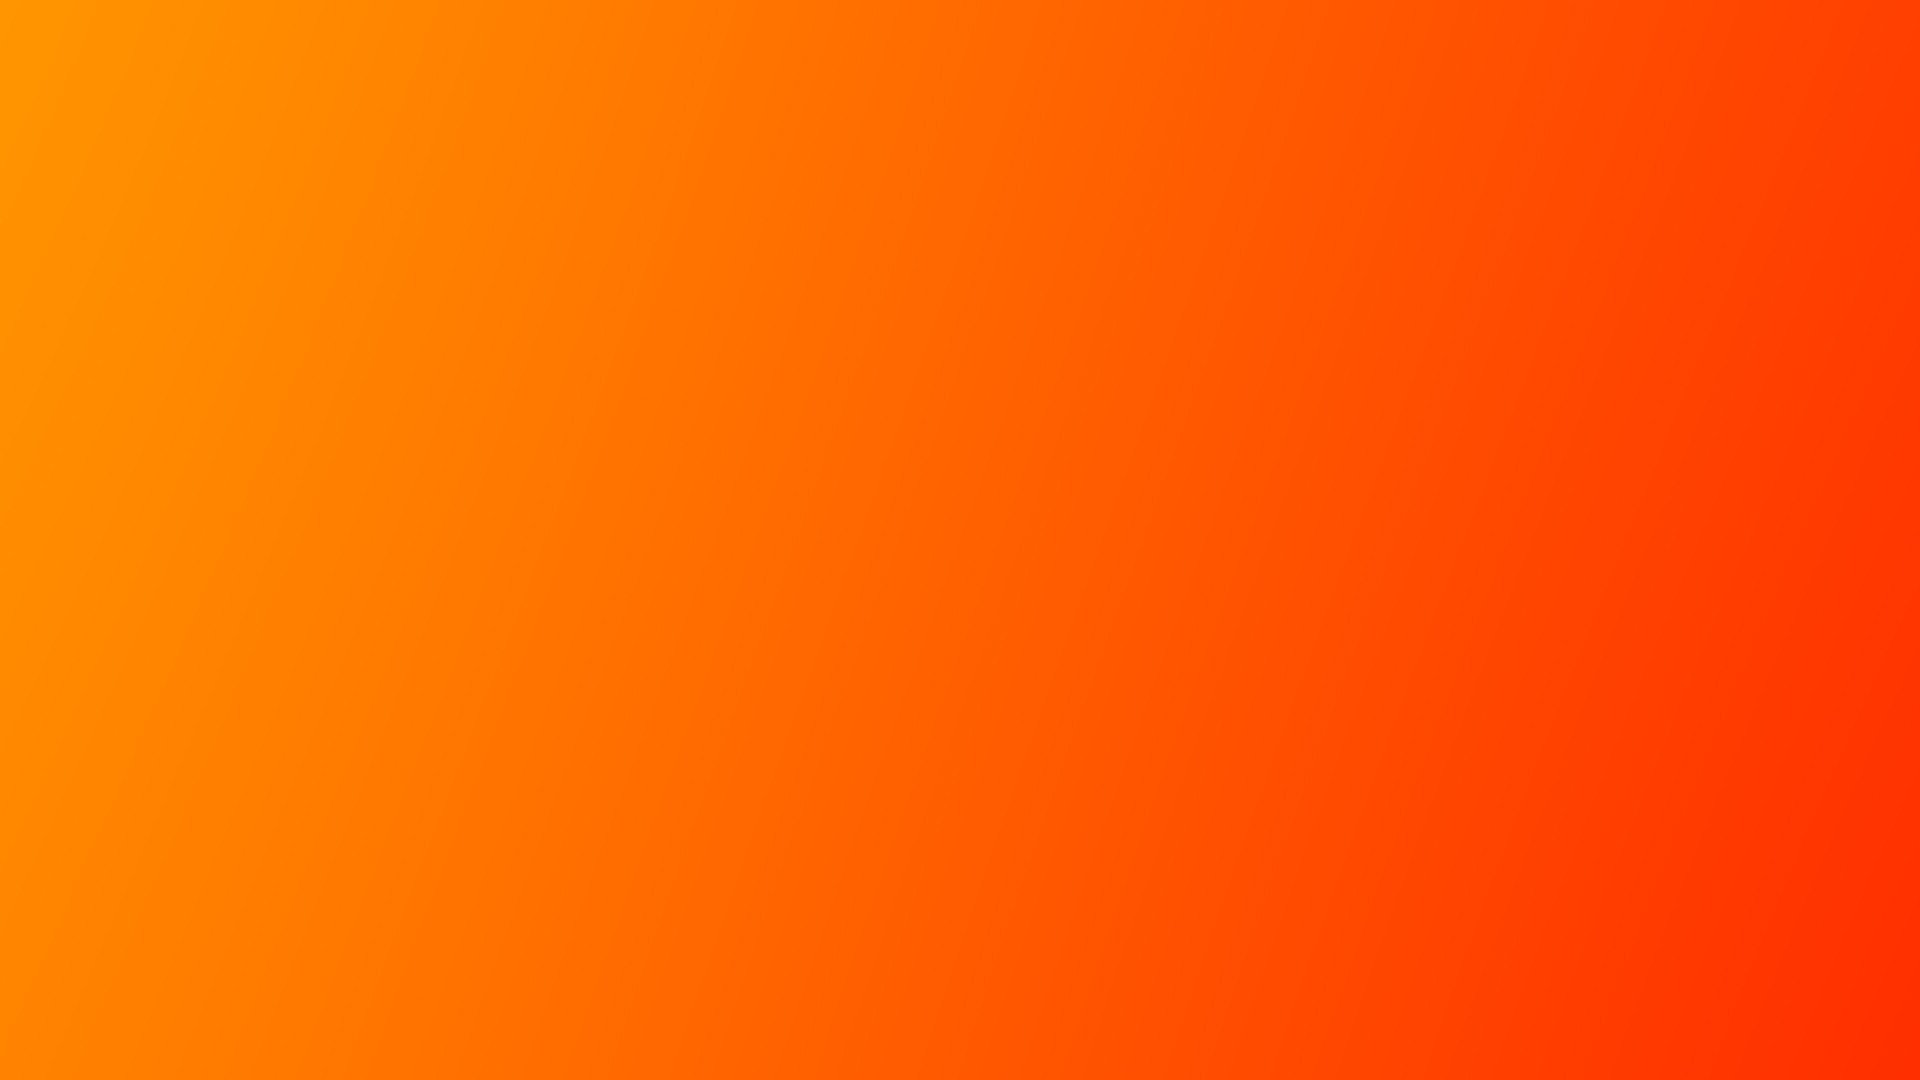 Ảnh nền gradient màu cam sẽ làm cho màn hình của bạn trở nên sáng tạo hơn bao giờ hết. Hãy xem ngay hình nền này để cảm nhận sự trẻ trung và sang trọng của màu cam.